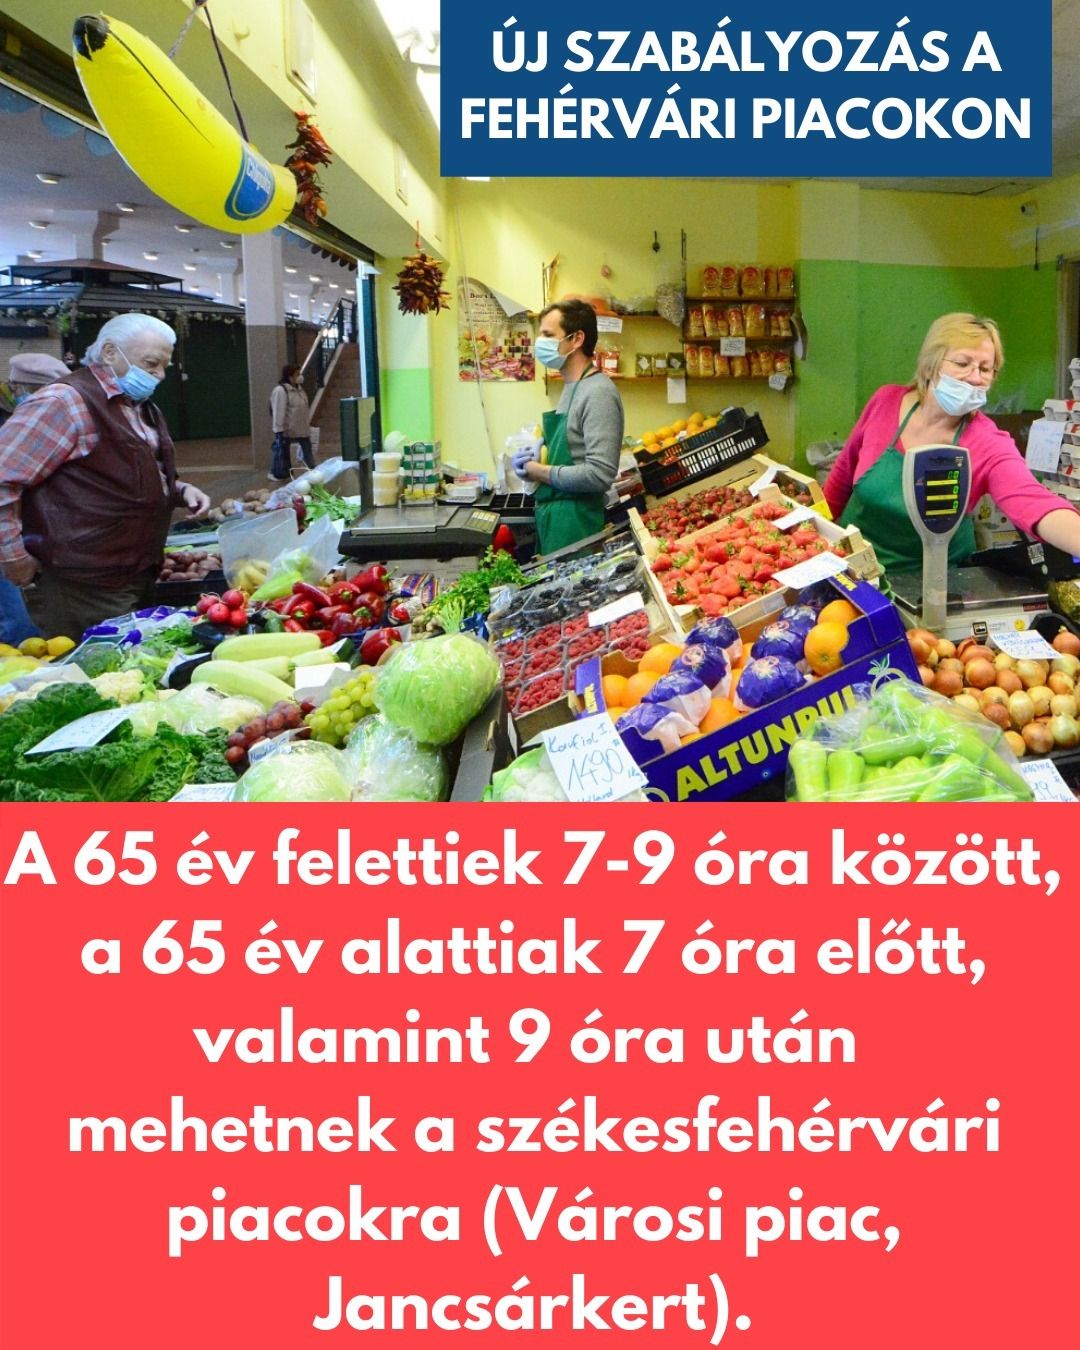 Szombattól 7 és 9 óra között vásárolhatnak a 65 év felettiek a fehérvári piacokon!